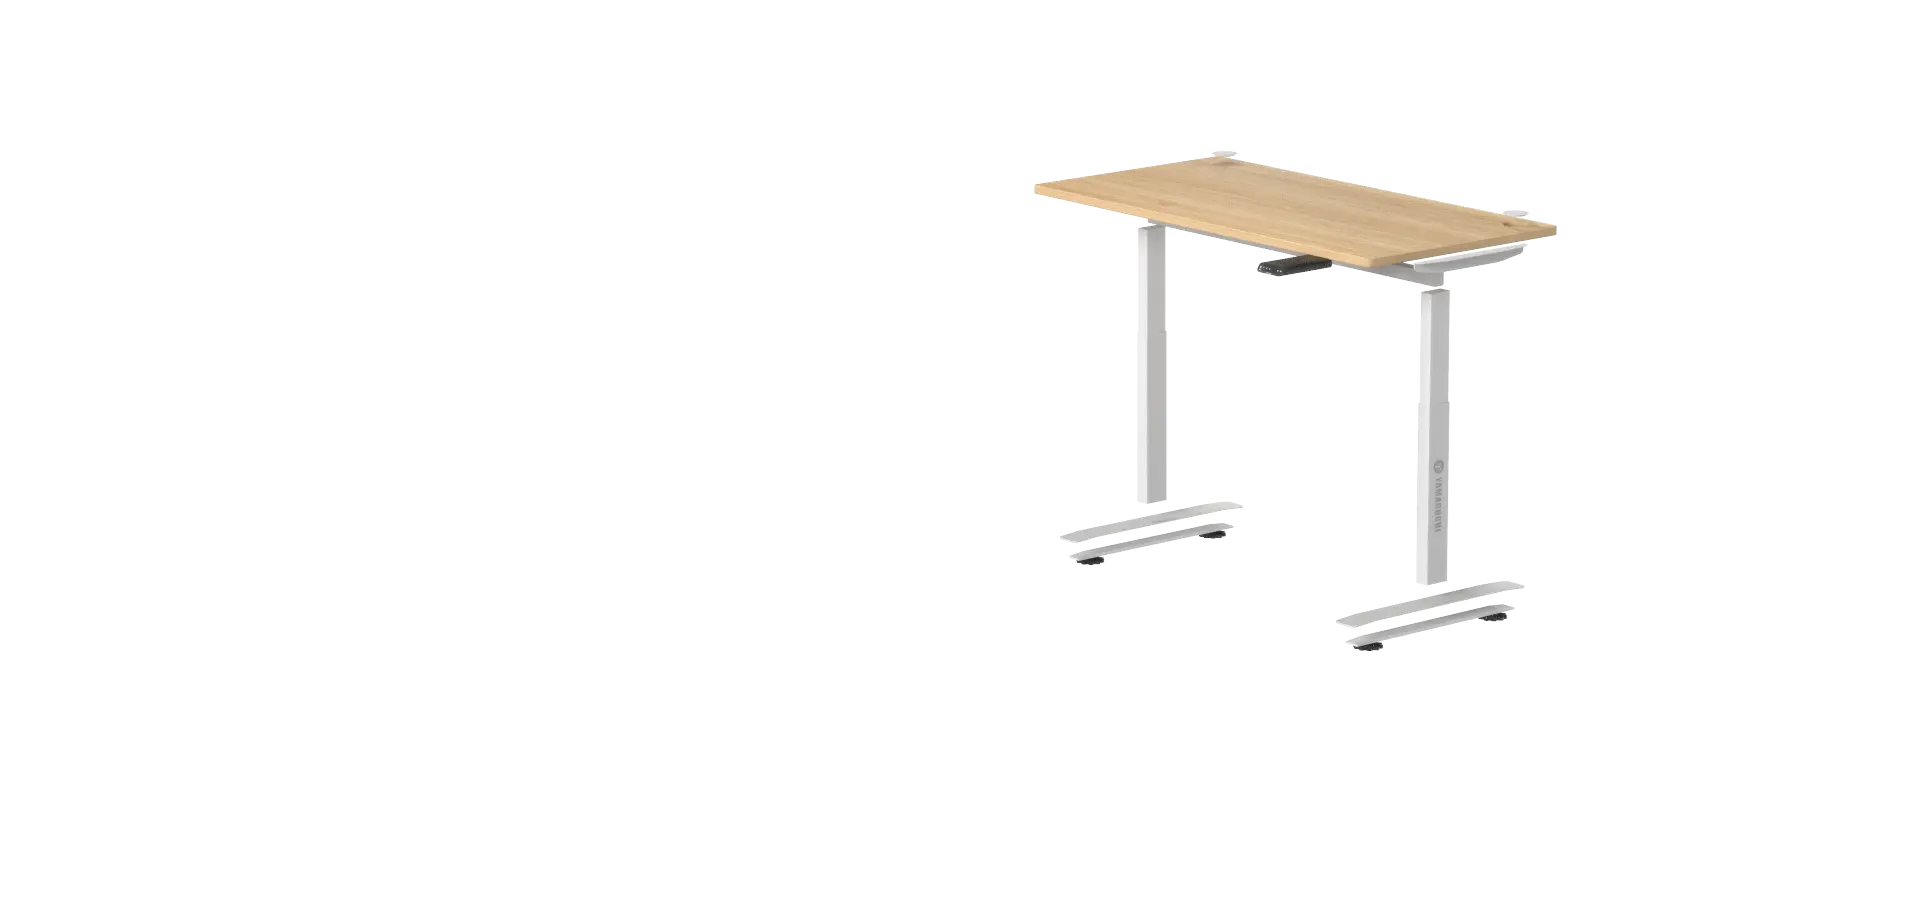 Пример стола на разных высотах